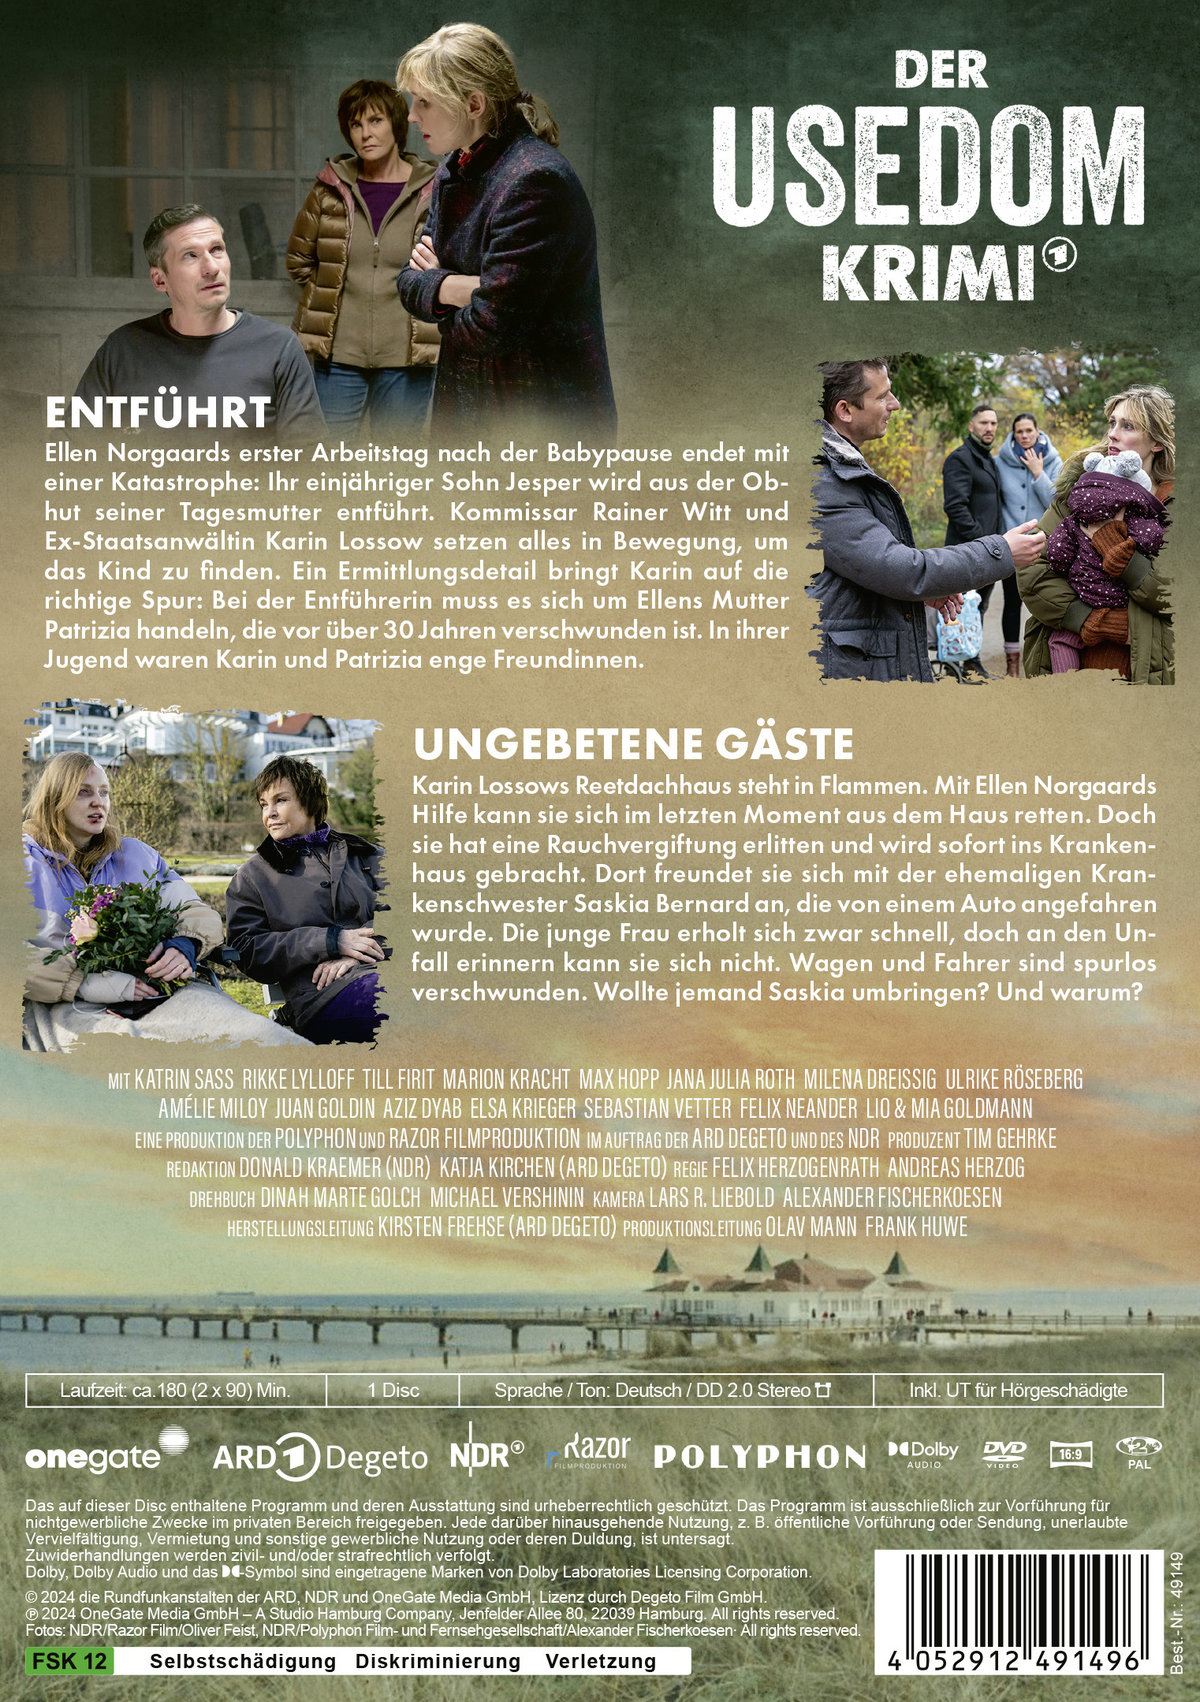 Der Usedom-Krimi: Entführt / Ungebetene Gäste  (DVD)